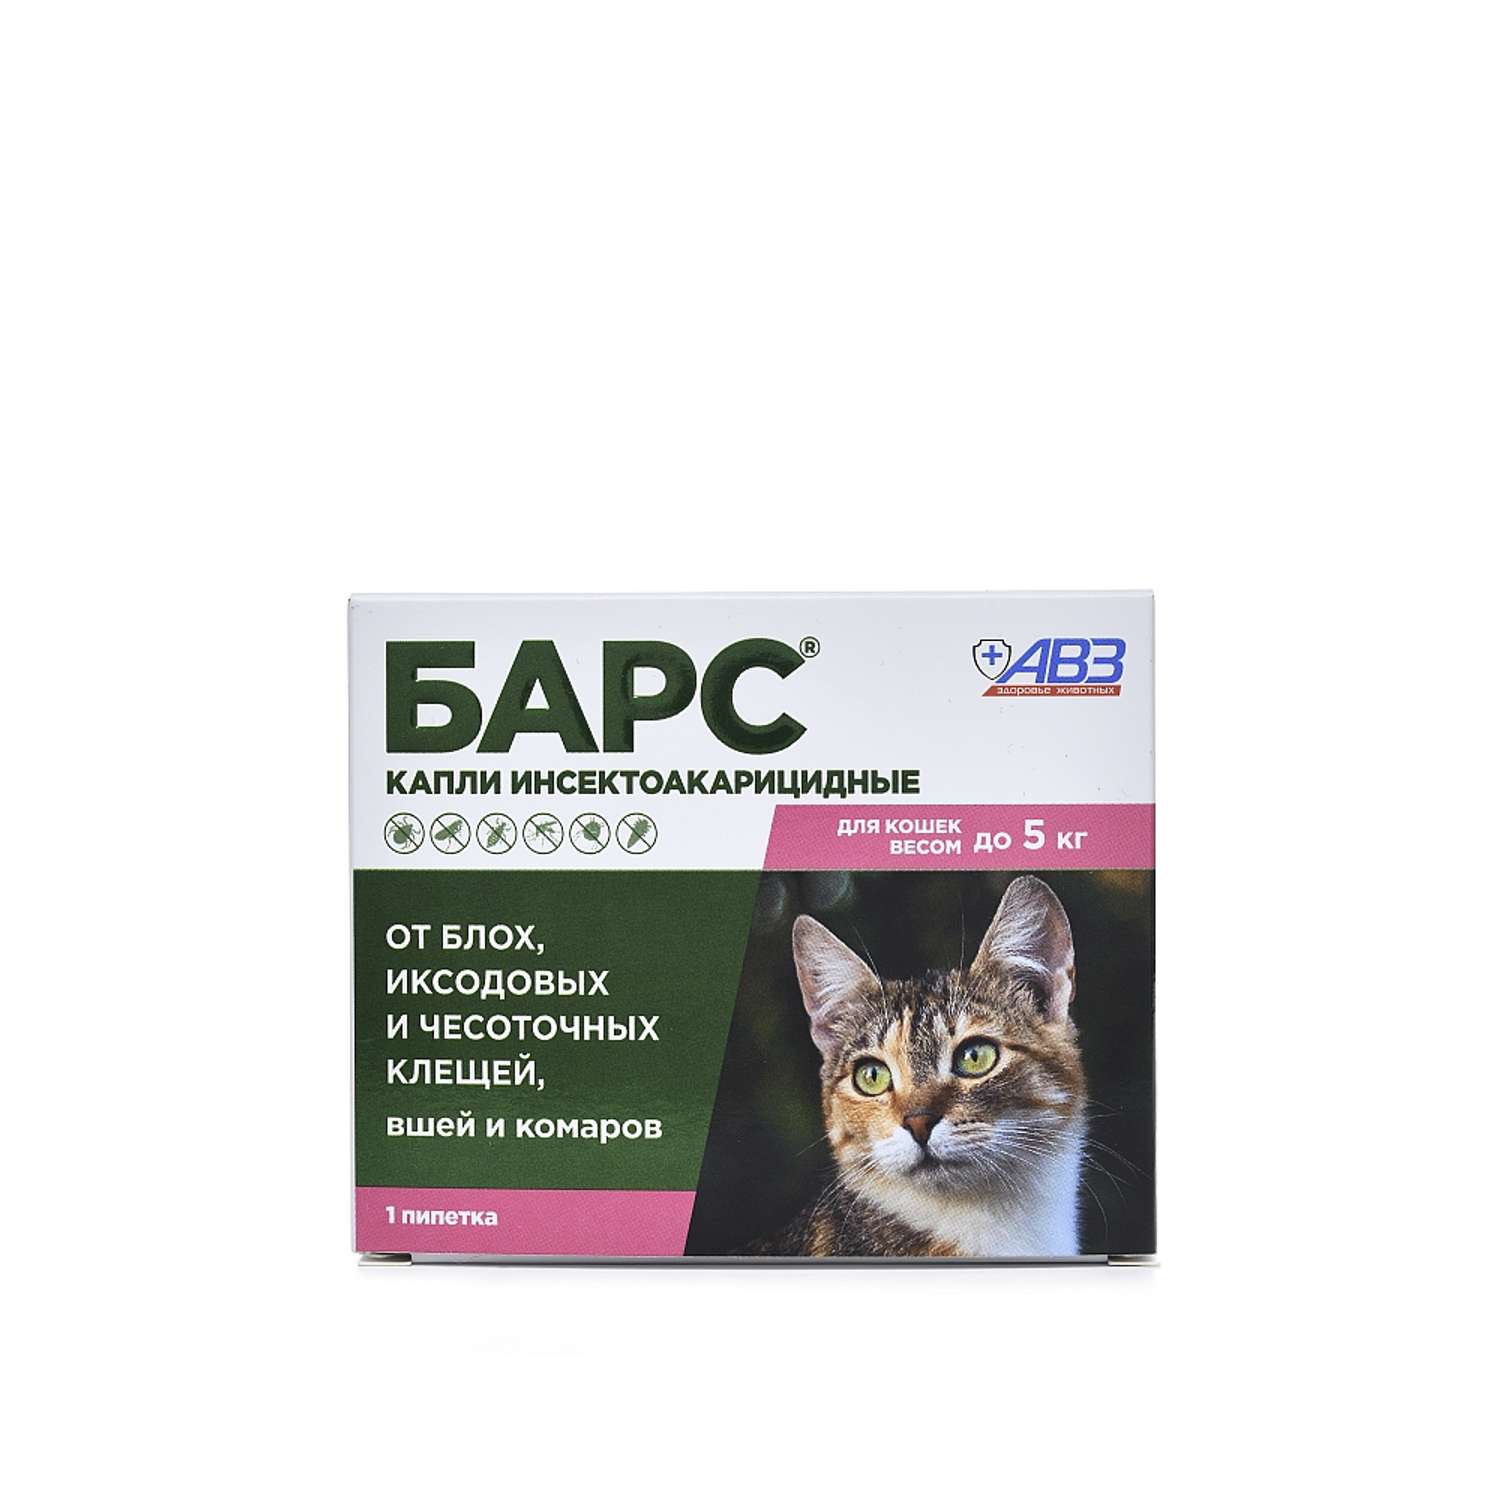 Капли для кошек АВЗ Барс до 5кг против блох и клещей 0.5мл - фото 1